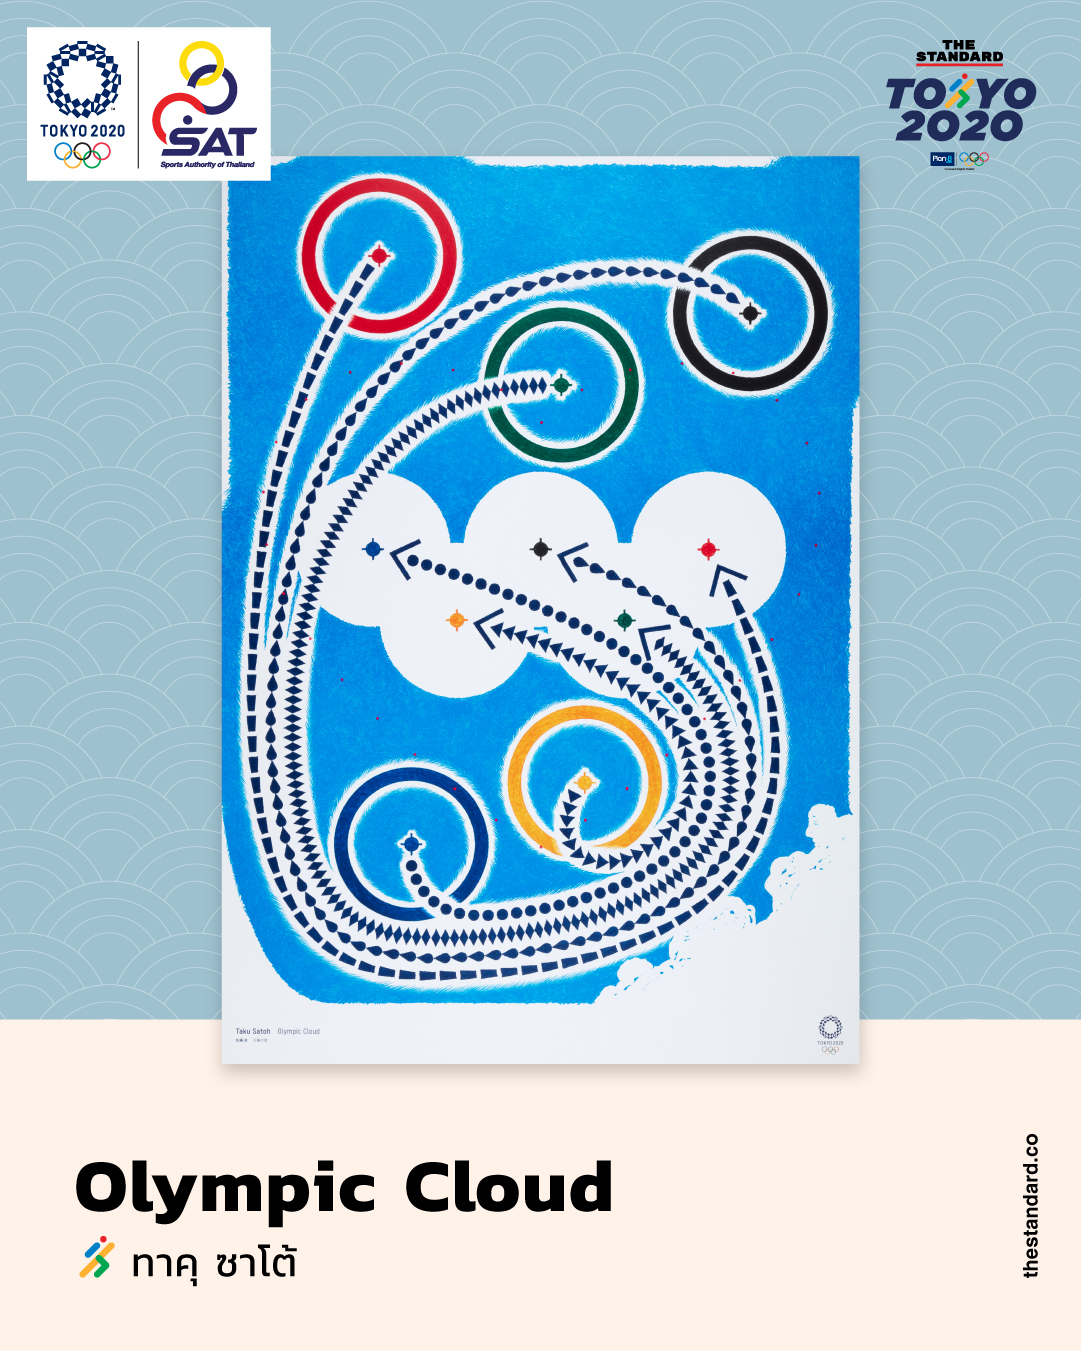 Olympic Cloud โดย ทาคุ ซาโต้ 